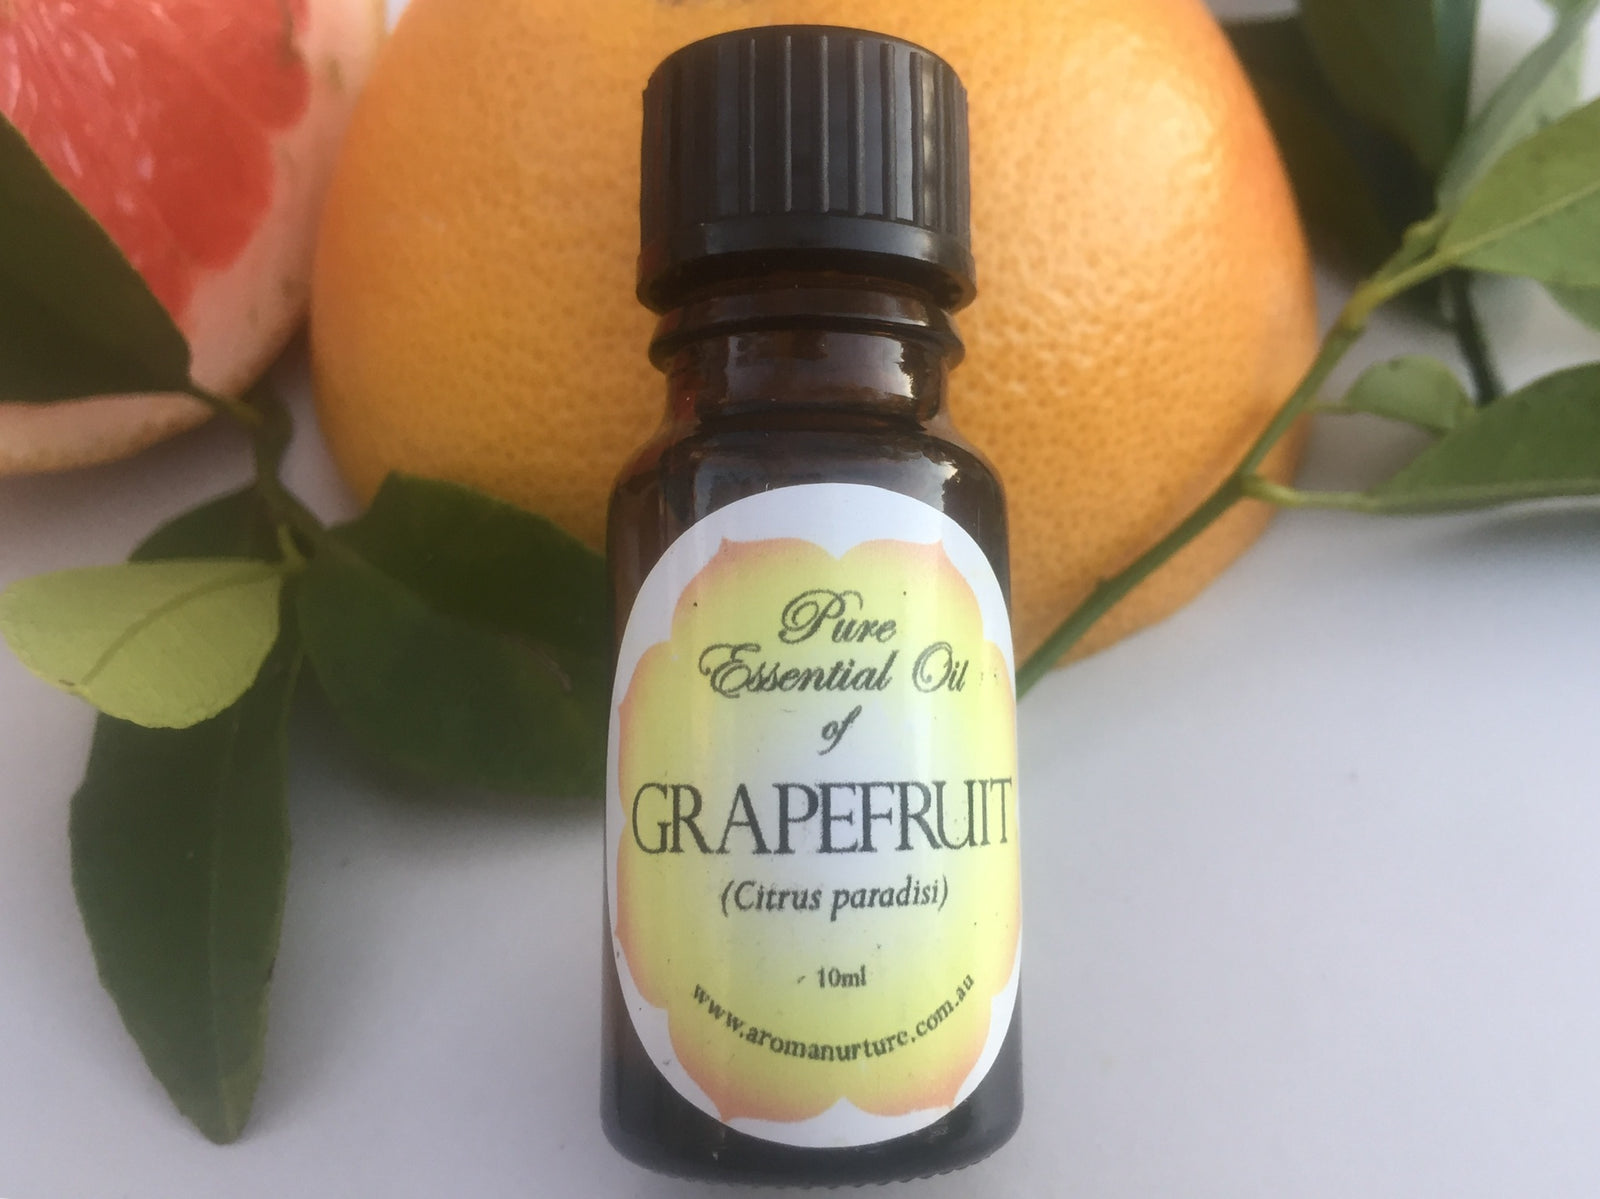 Pure Essential Oil of Grapefruit..(Citrus paradisi)